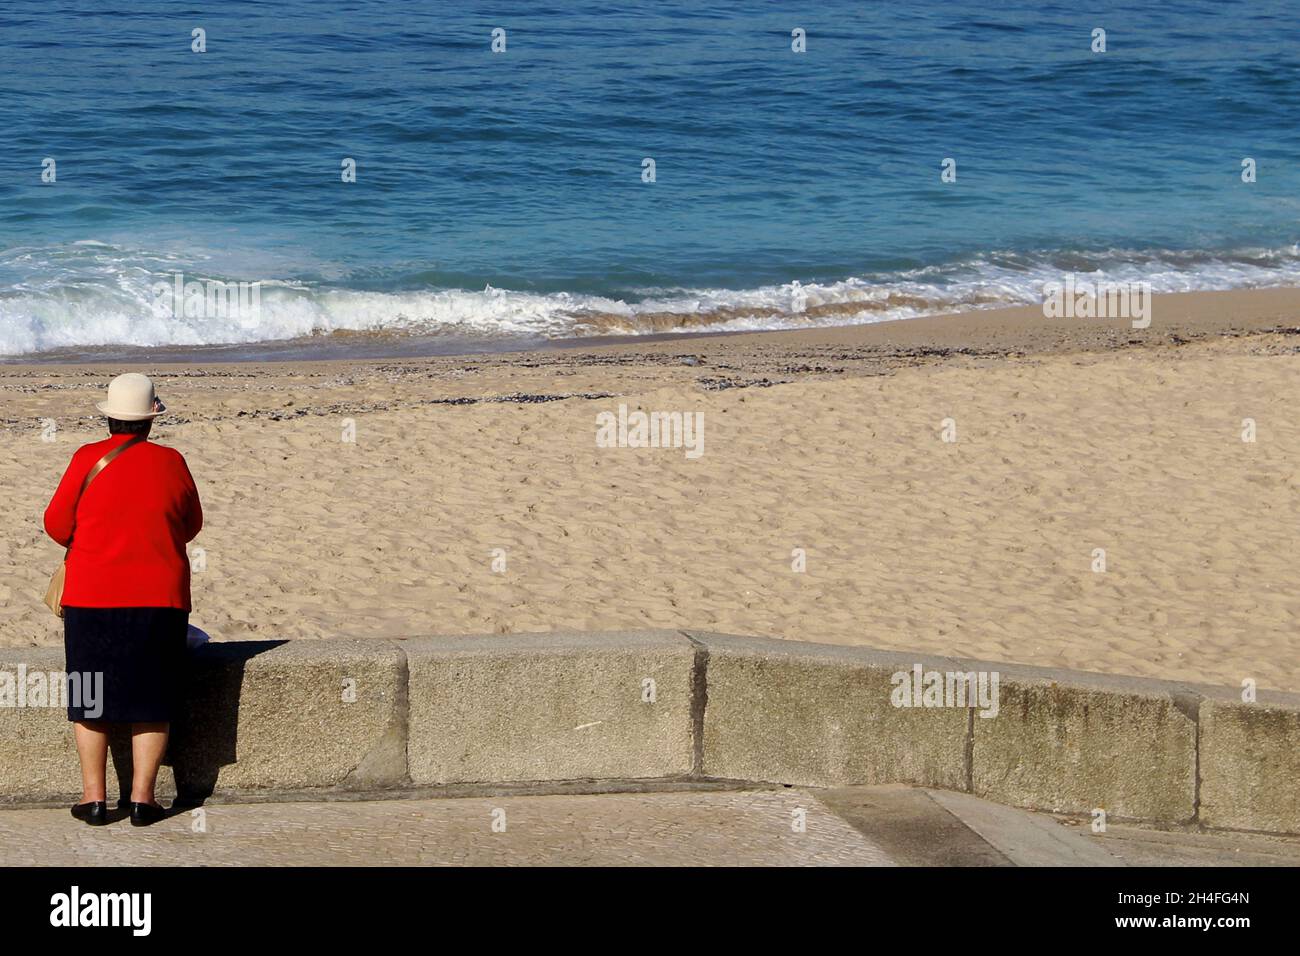 Eine ältere Dame (keine Erkennbarkeit) mit einem roten Blazer, einem schwarzen Rock und weißem Hut steht vor einer Strandmauer, Espinho, Portugal. Foto de stock